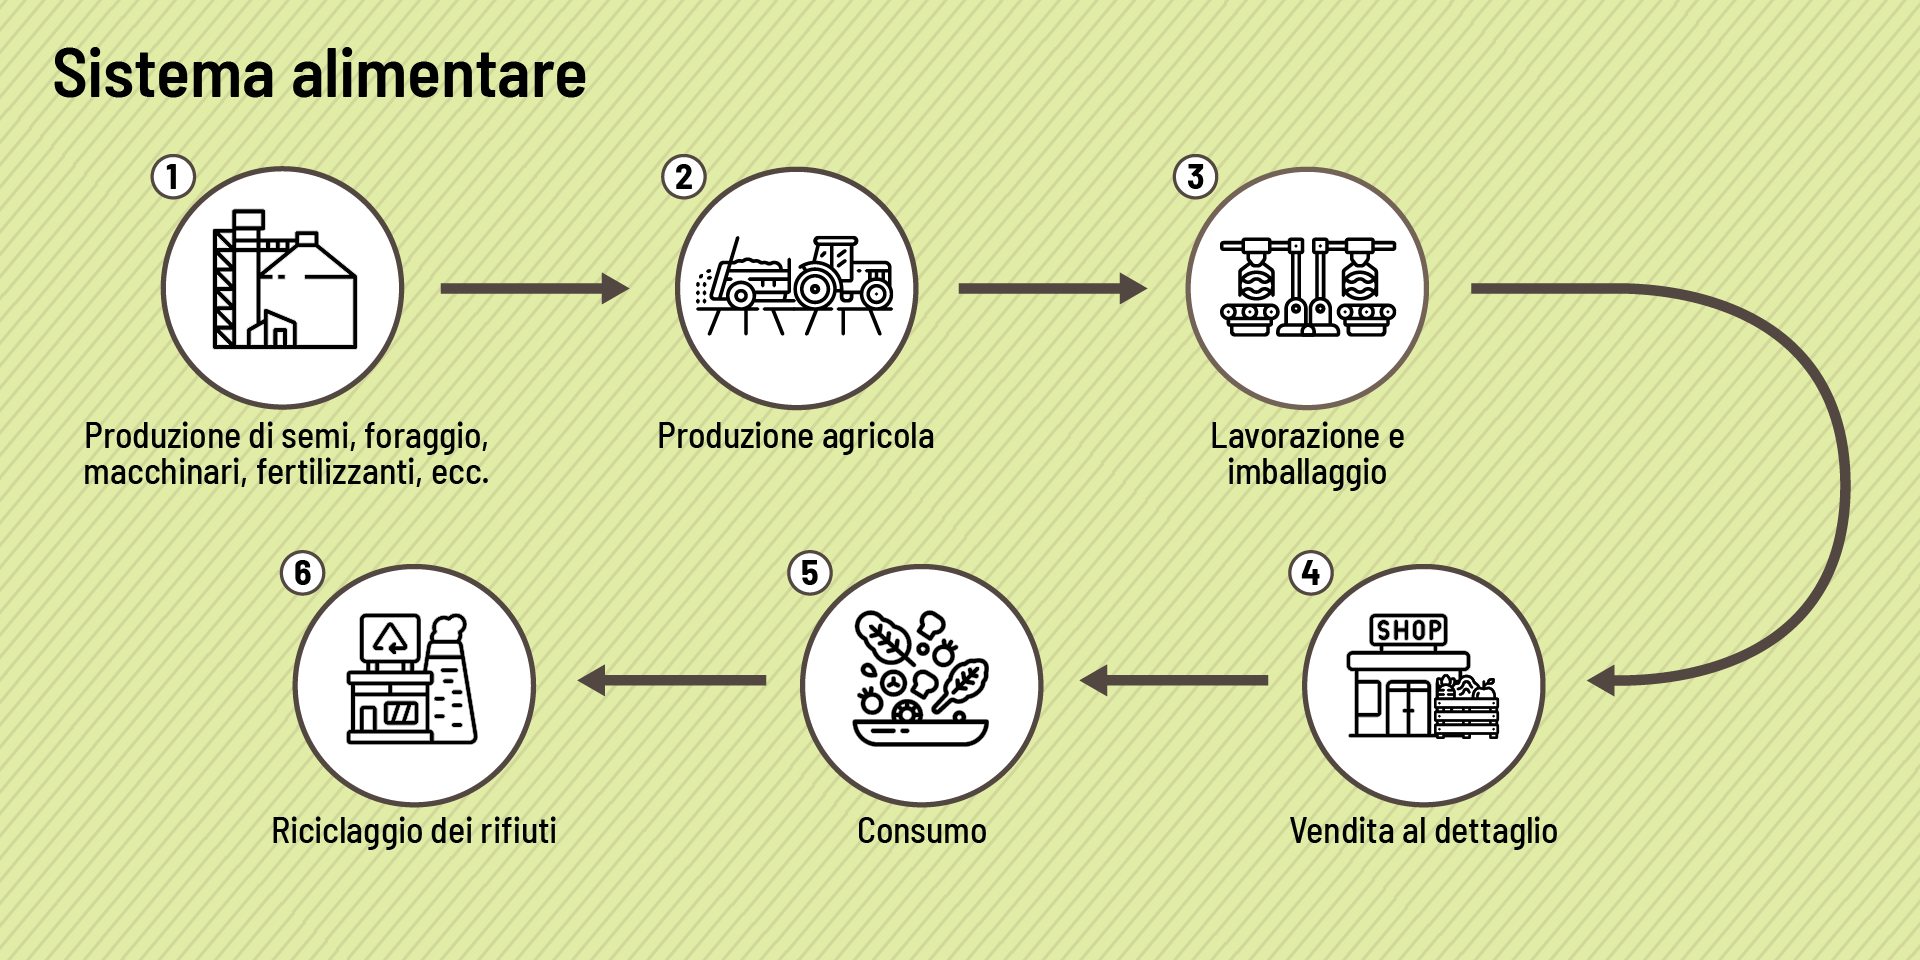 Un grafico rappresenta le tappe di un sistema alimentare: produzione di semi e mangimi, produzione agricola, trasformazione e imballaggio, vendita al dettaglio, consumo e riciclaggio dei rifiuti.